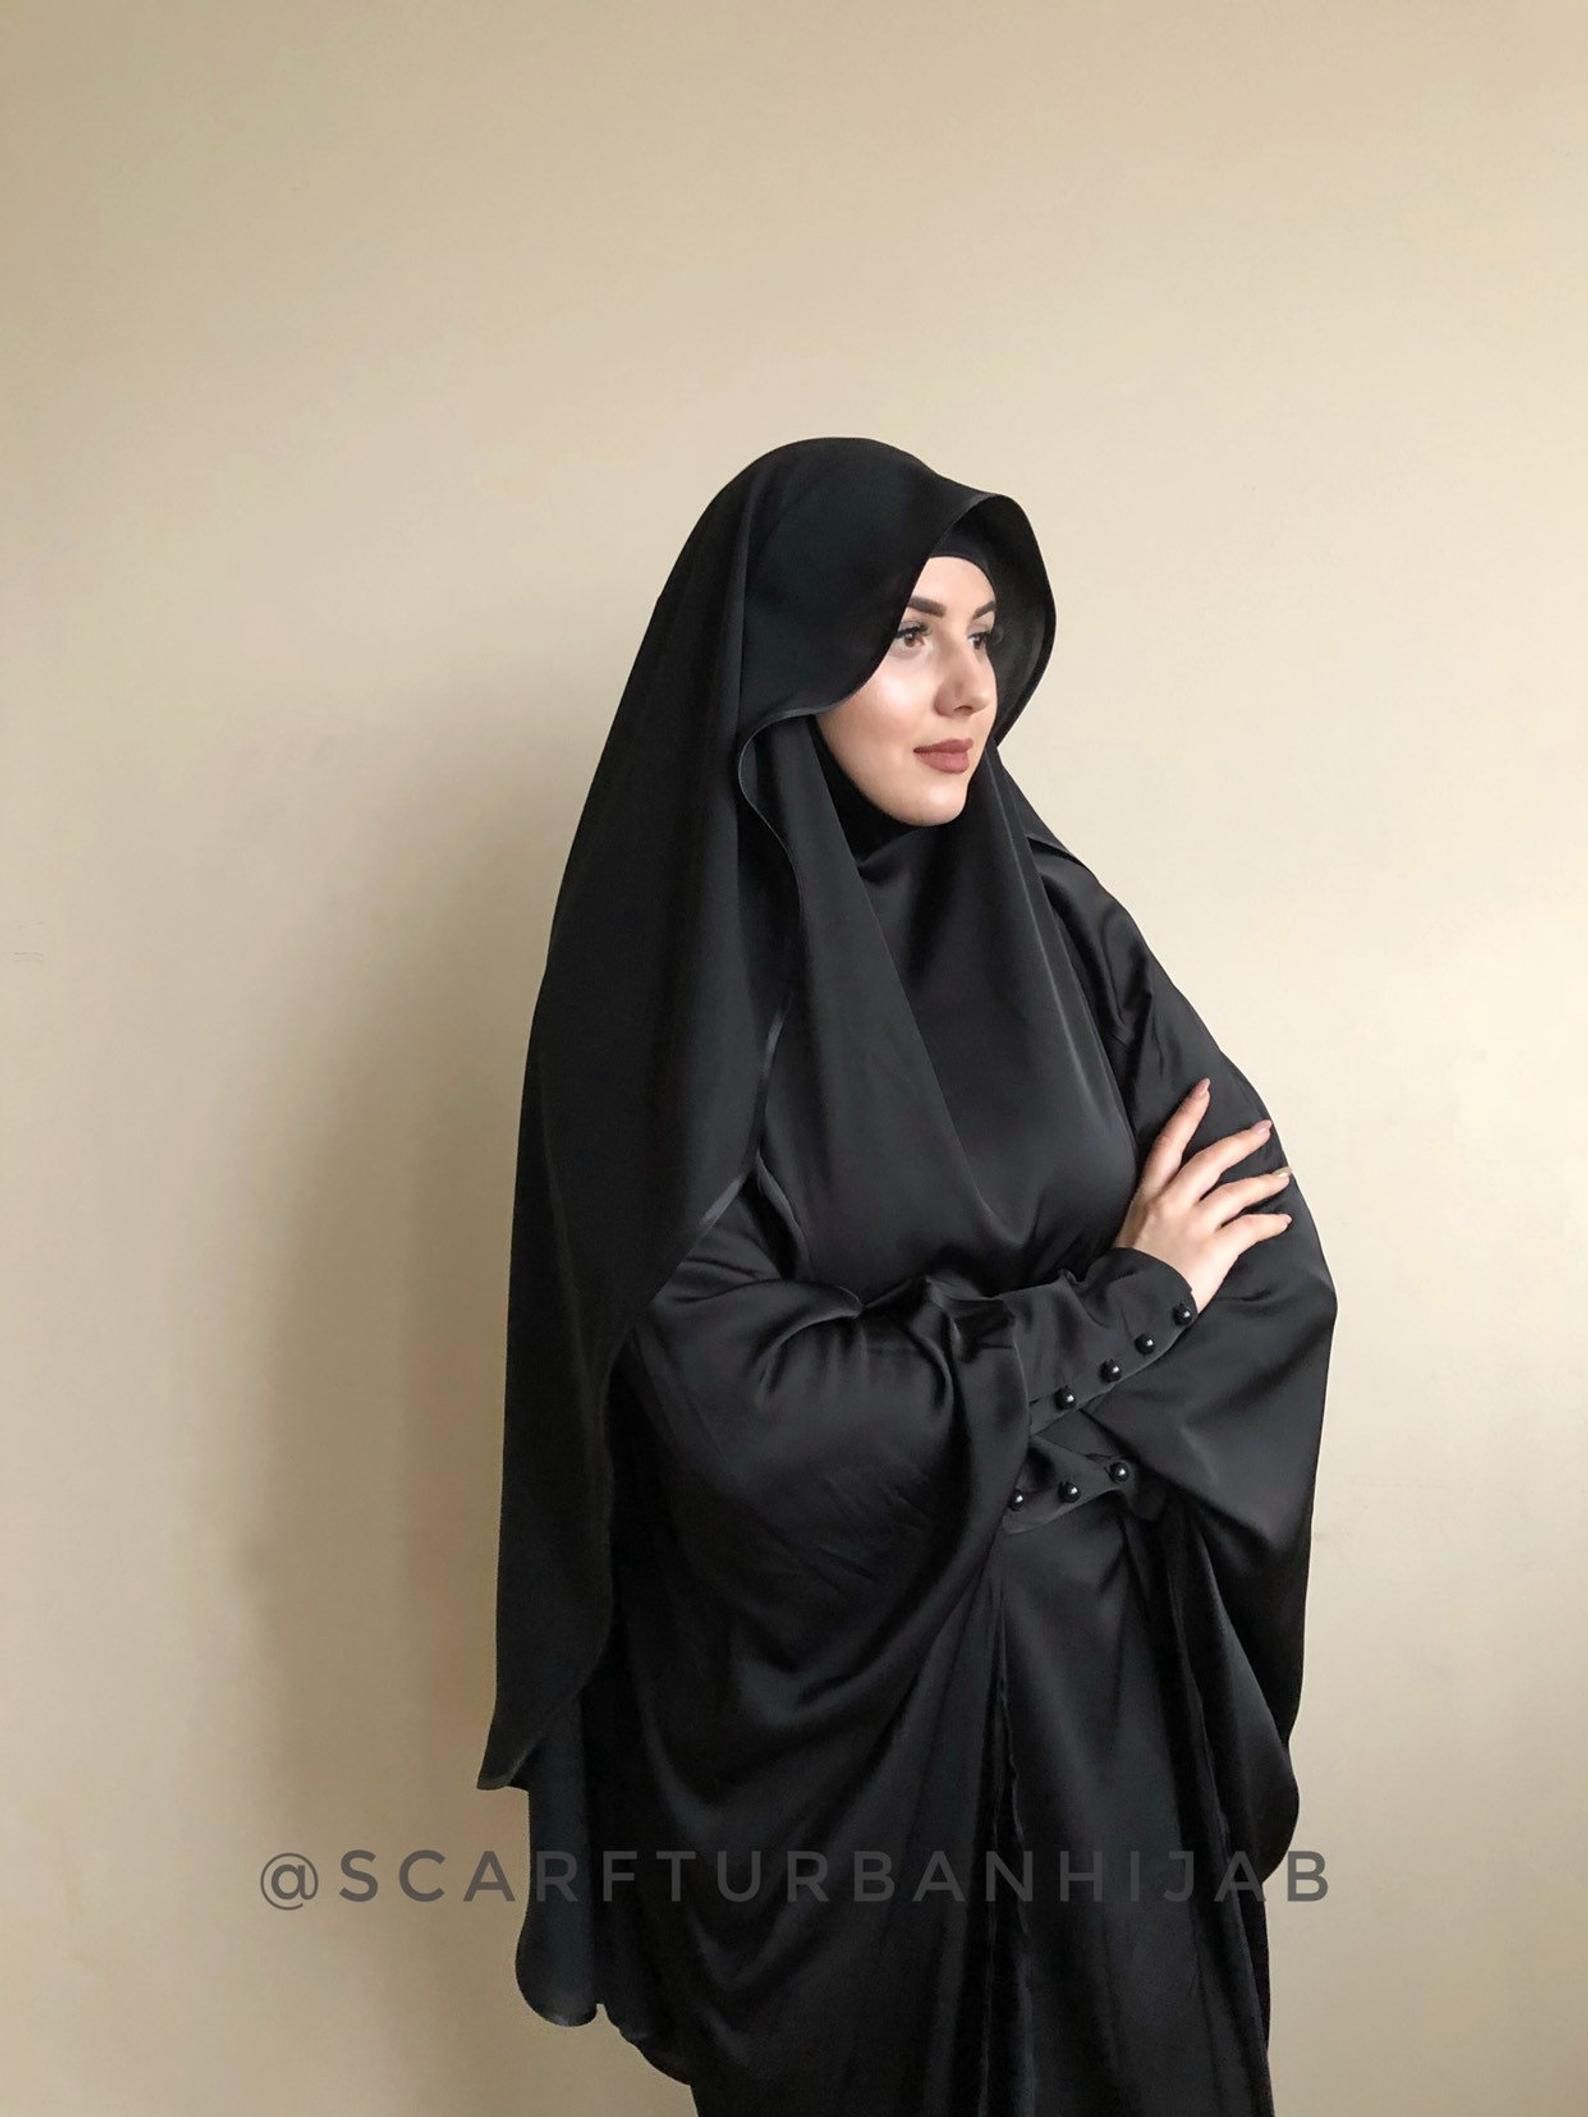 Black Crepe chiffon veil, Muslim clothing, hijab - Black Crepe chiffon veil, Muslim clothing, hijab -   12 style Black hijab ideas